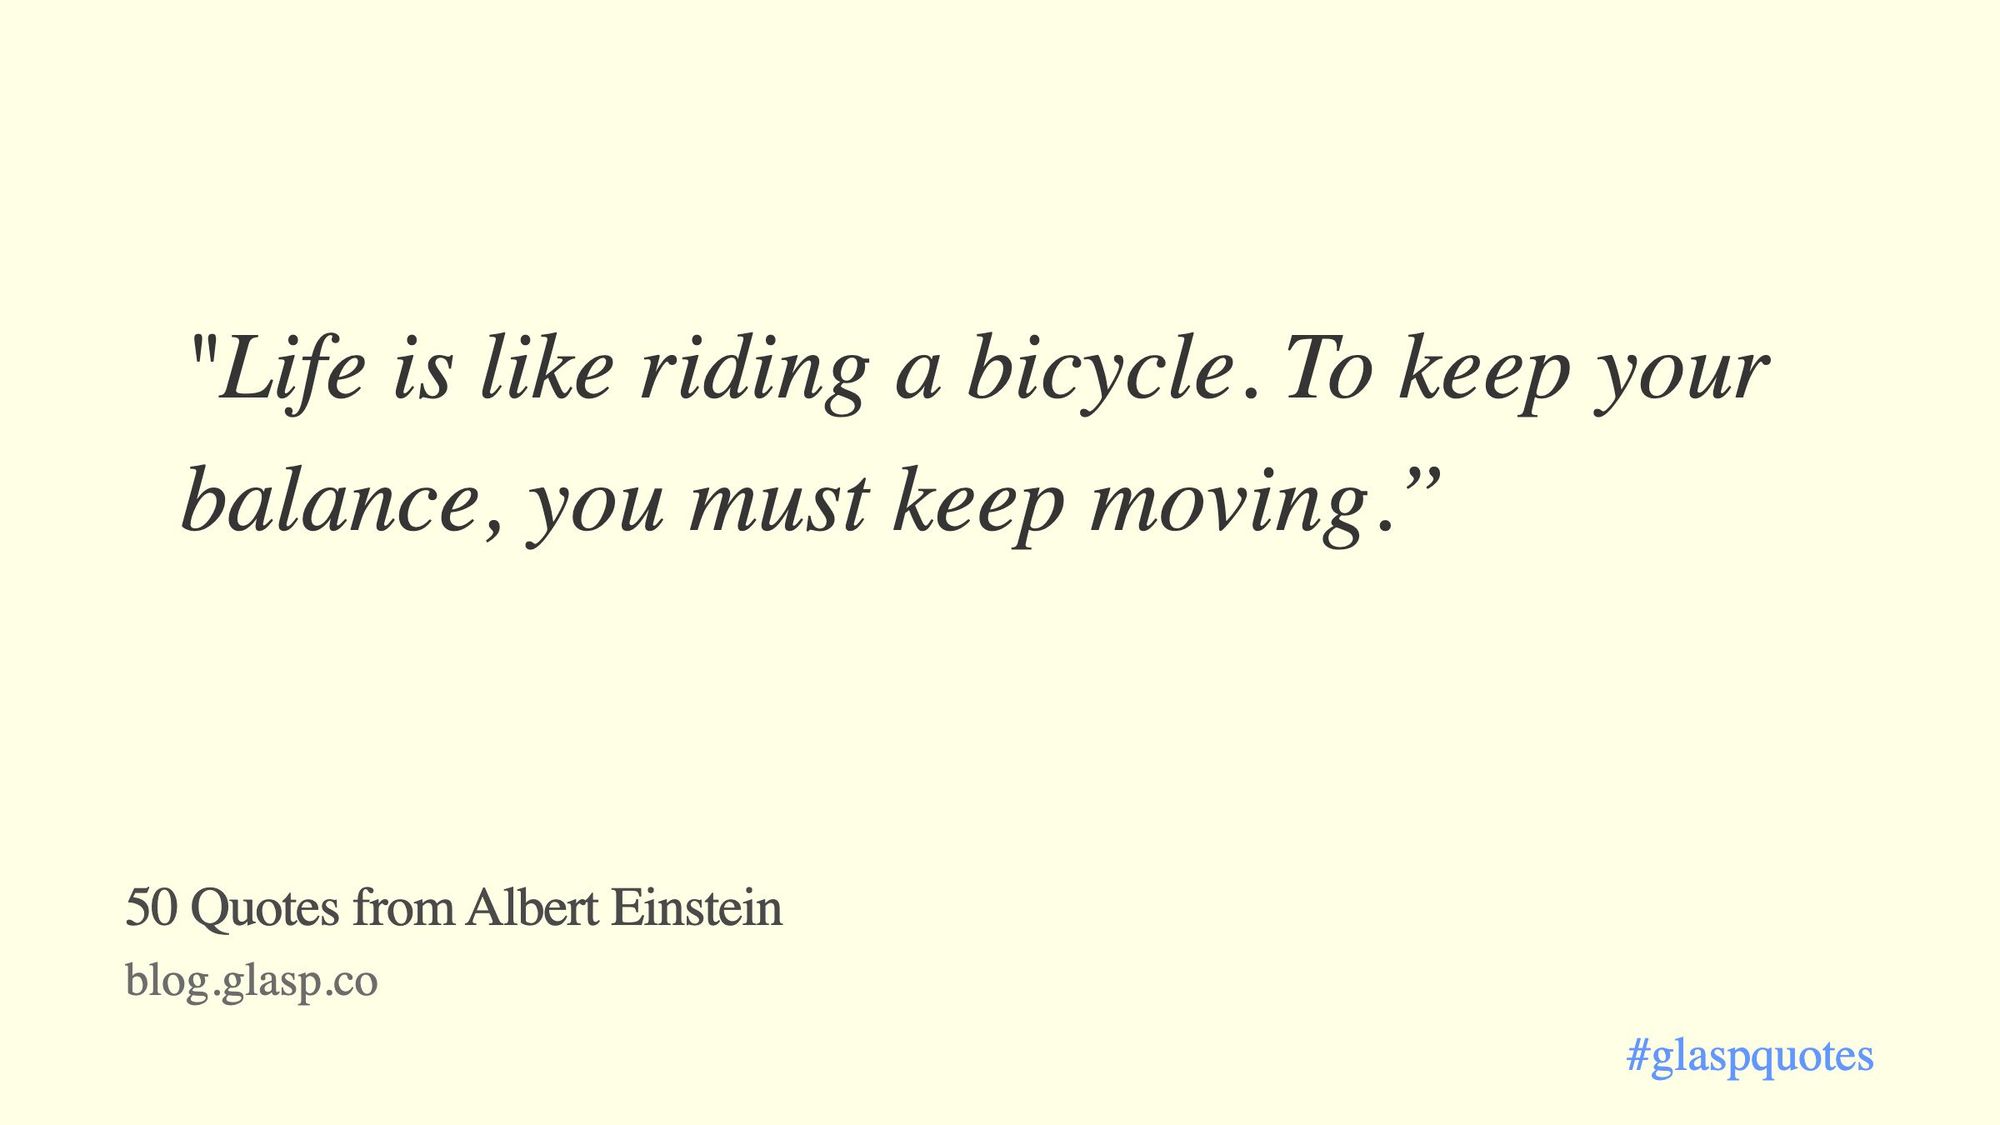 23 Genius Quotes From Albert Einstein That Will Make You Sound